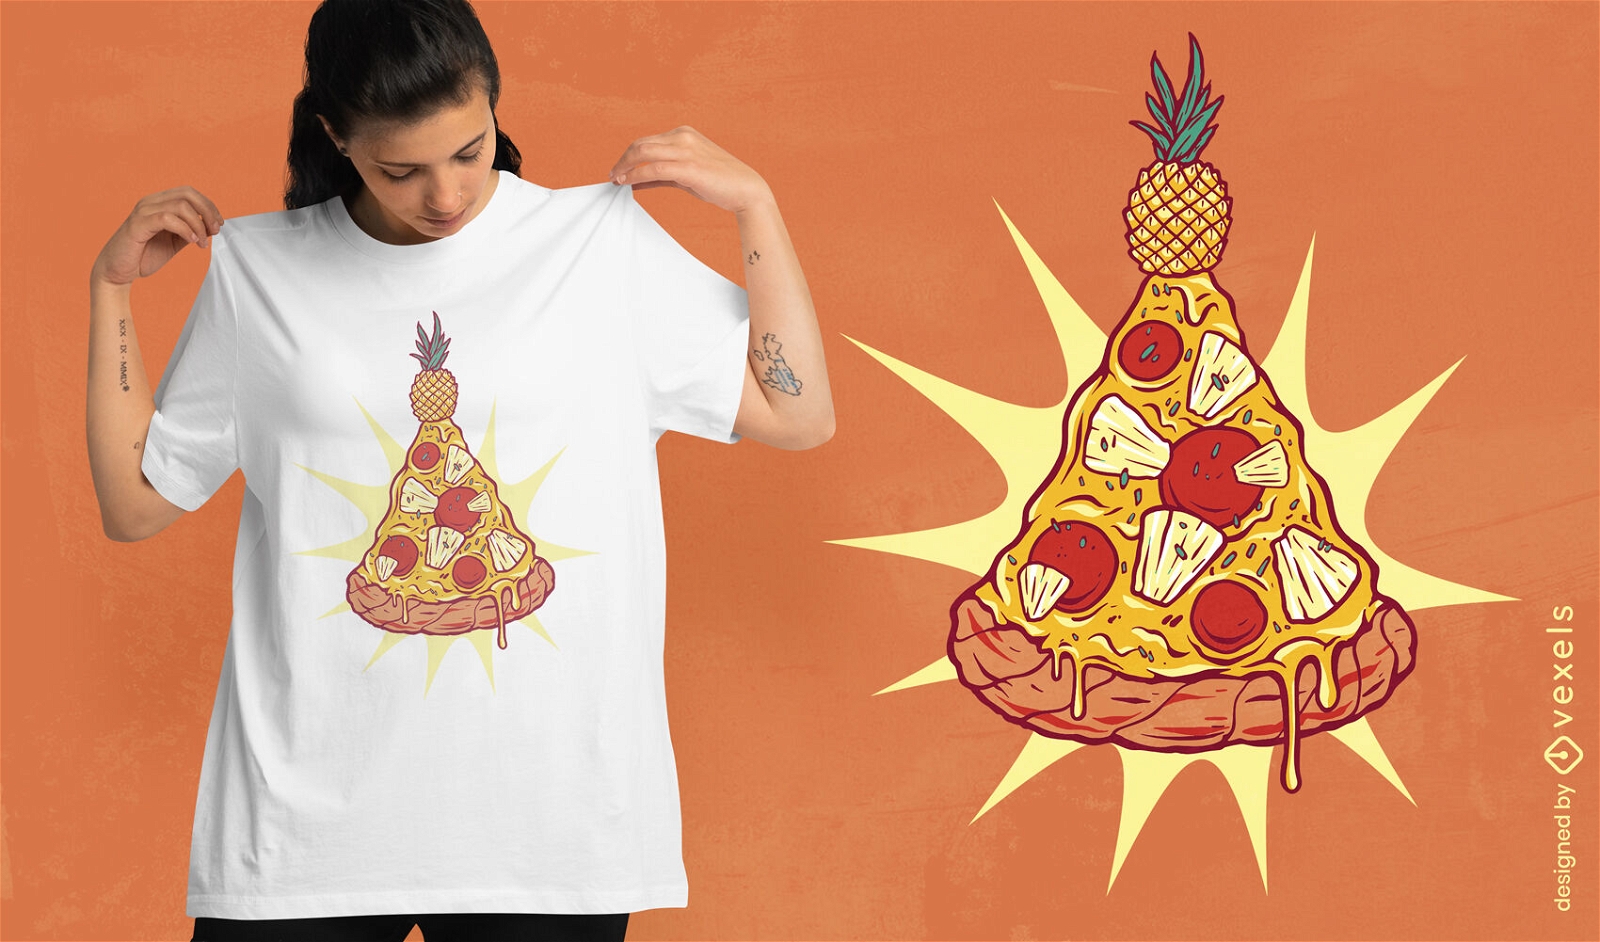 Diseño de camiseta navideña de pizza de piña.